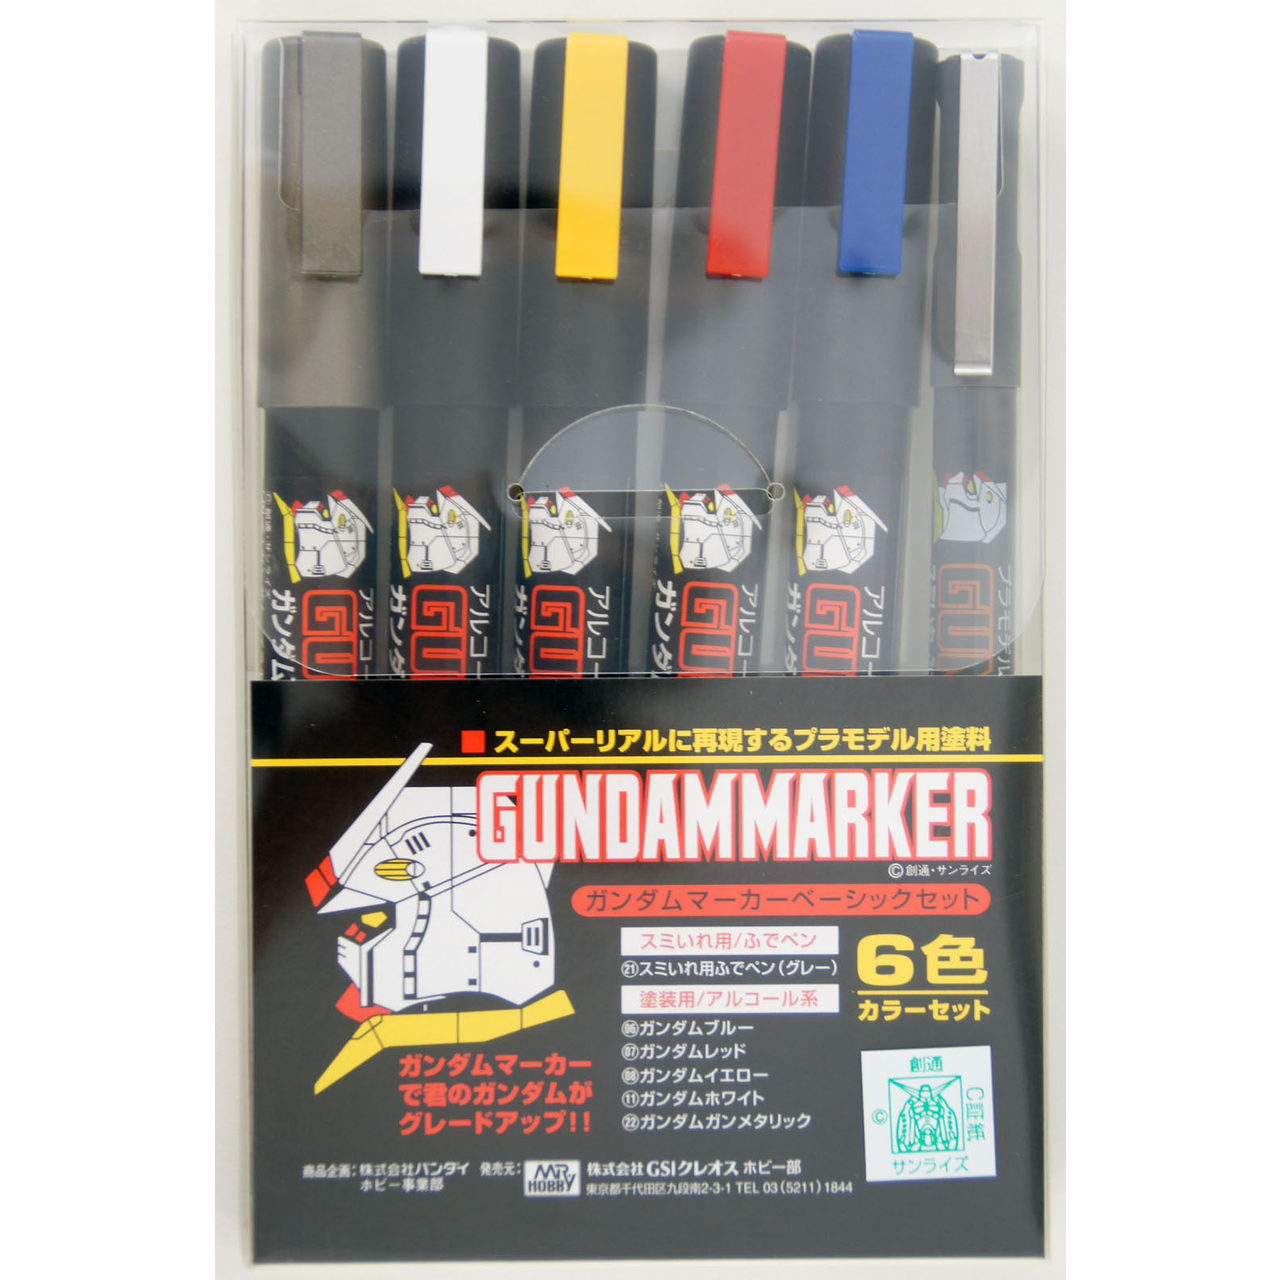 Gundam Marker Sets